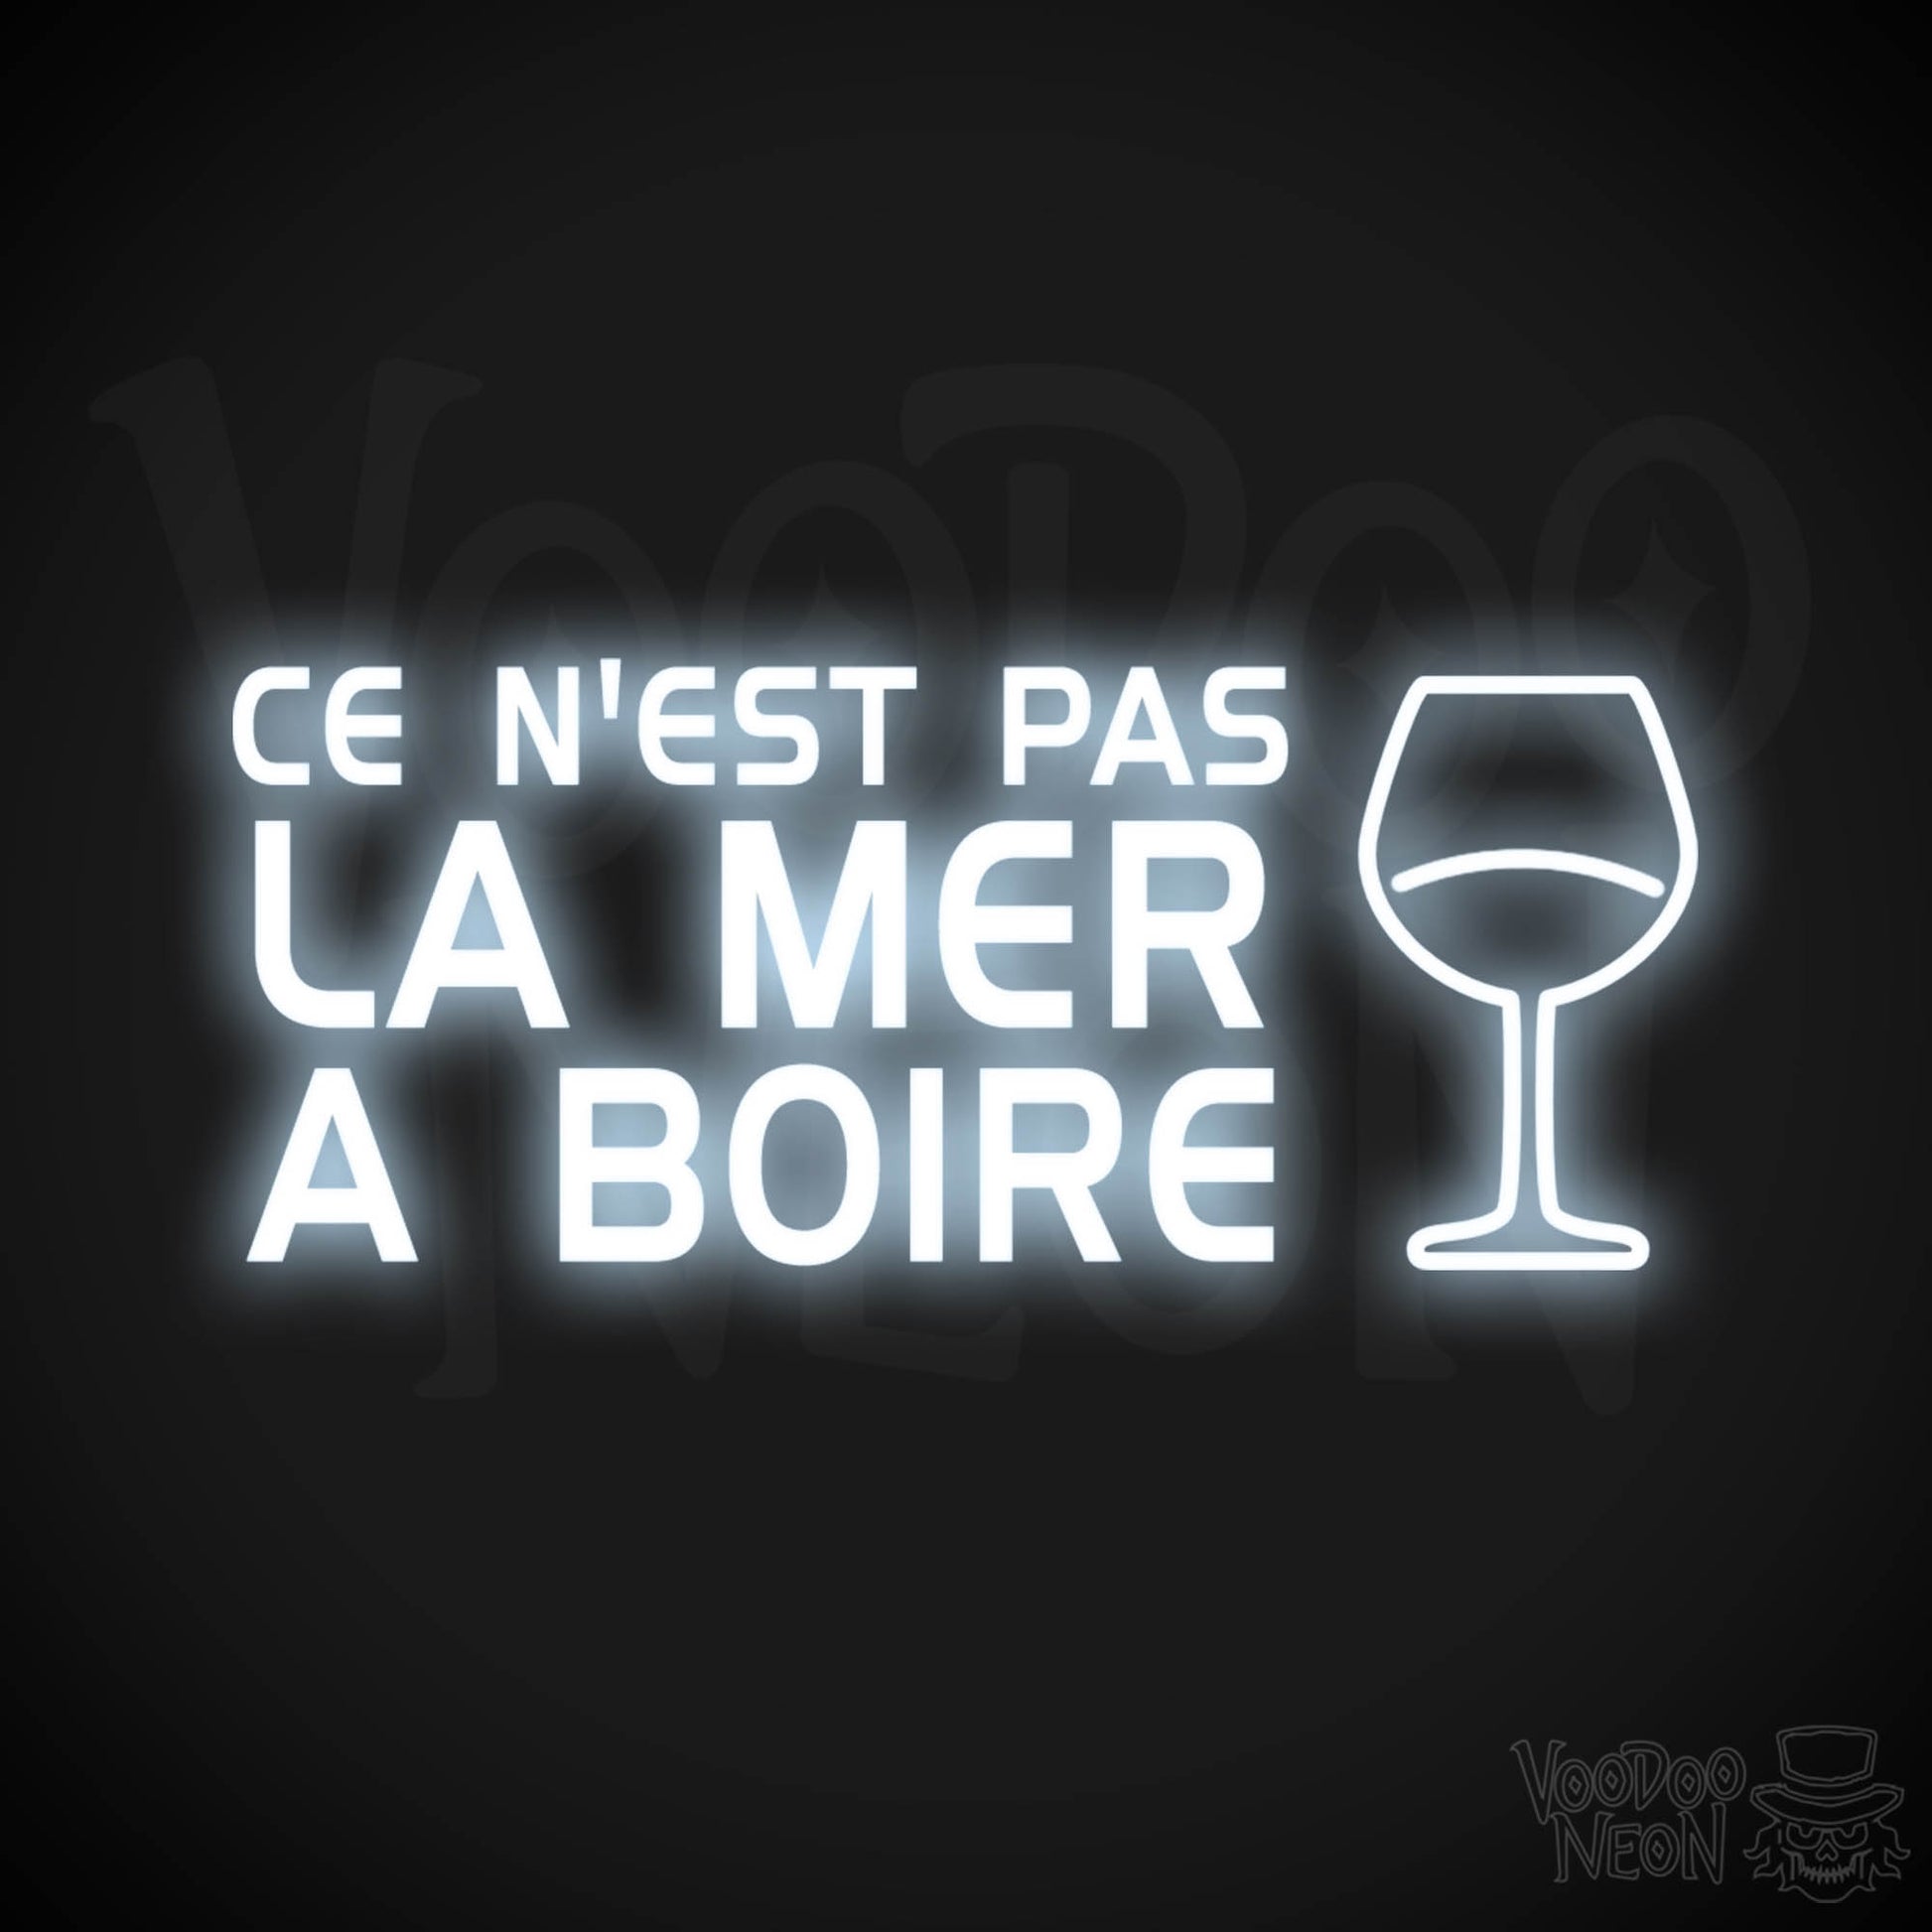 Ce N'est Pas La Mer a Boire Neon Sign - LED Lights - Color Cool White